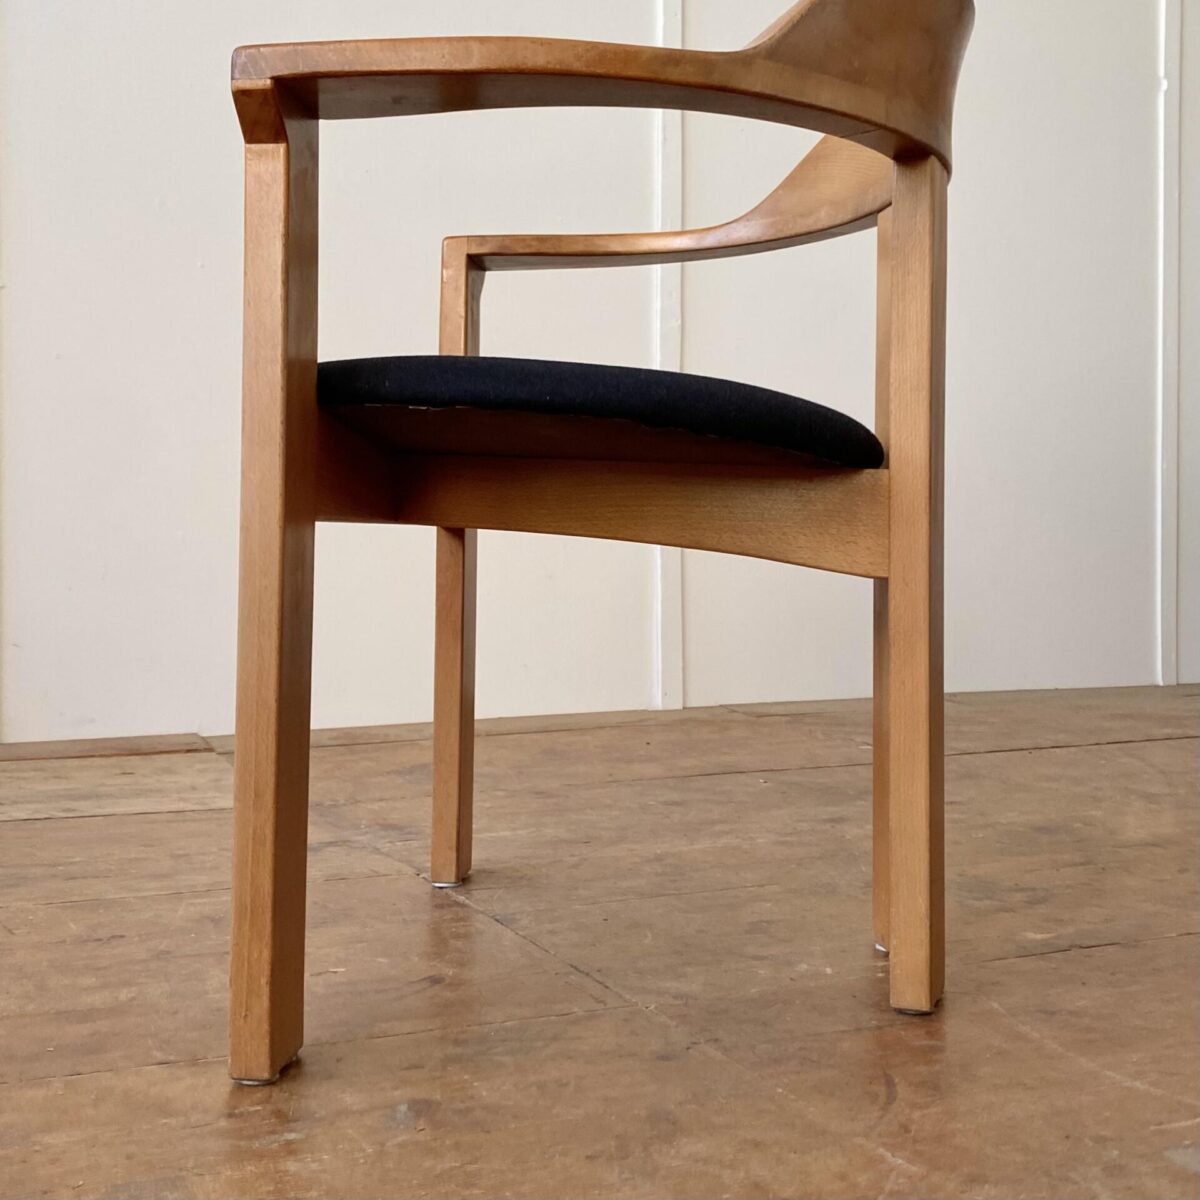 Deuxieme.shop Robert Haussmann Expo Stühle bentwood armrestchair 50s swissdesign